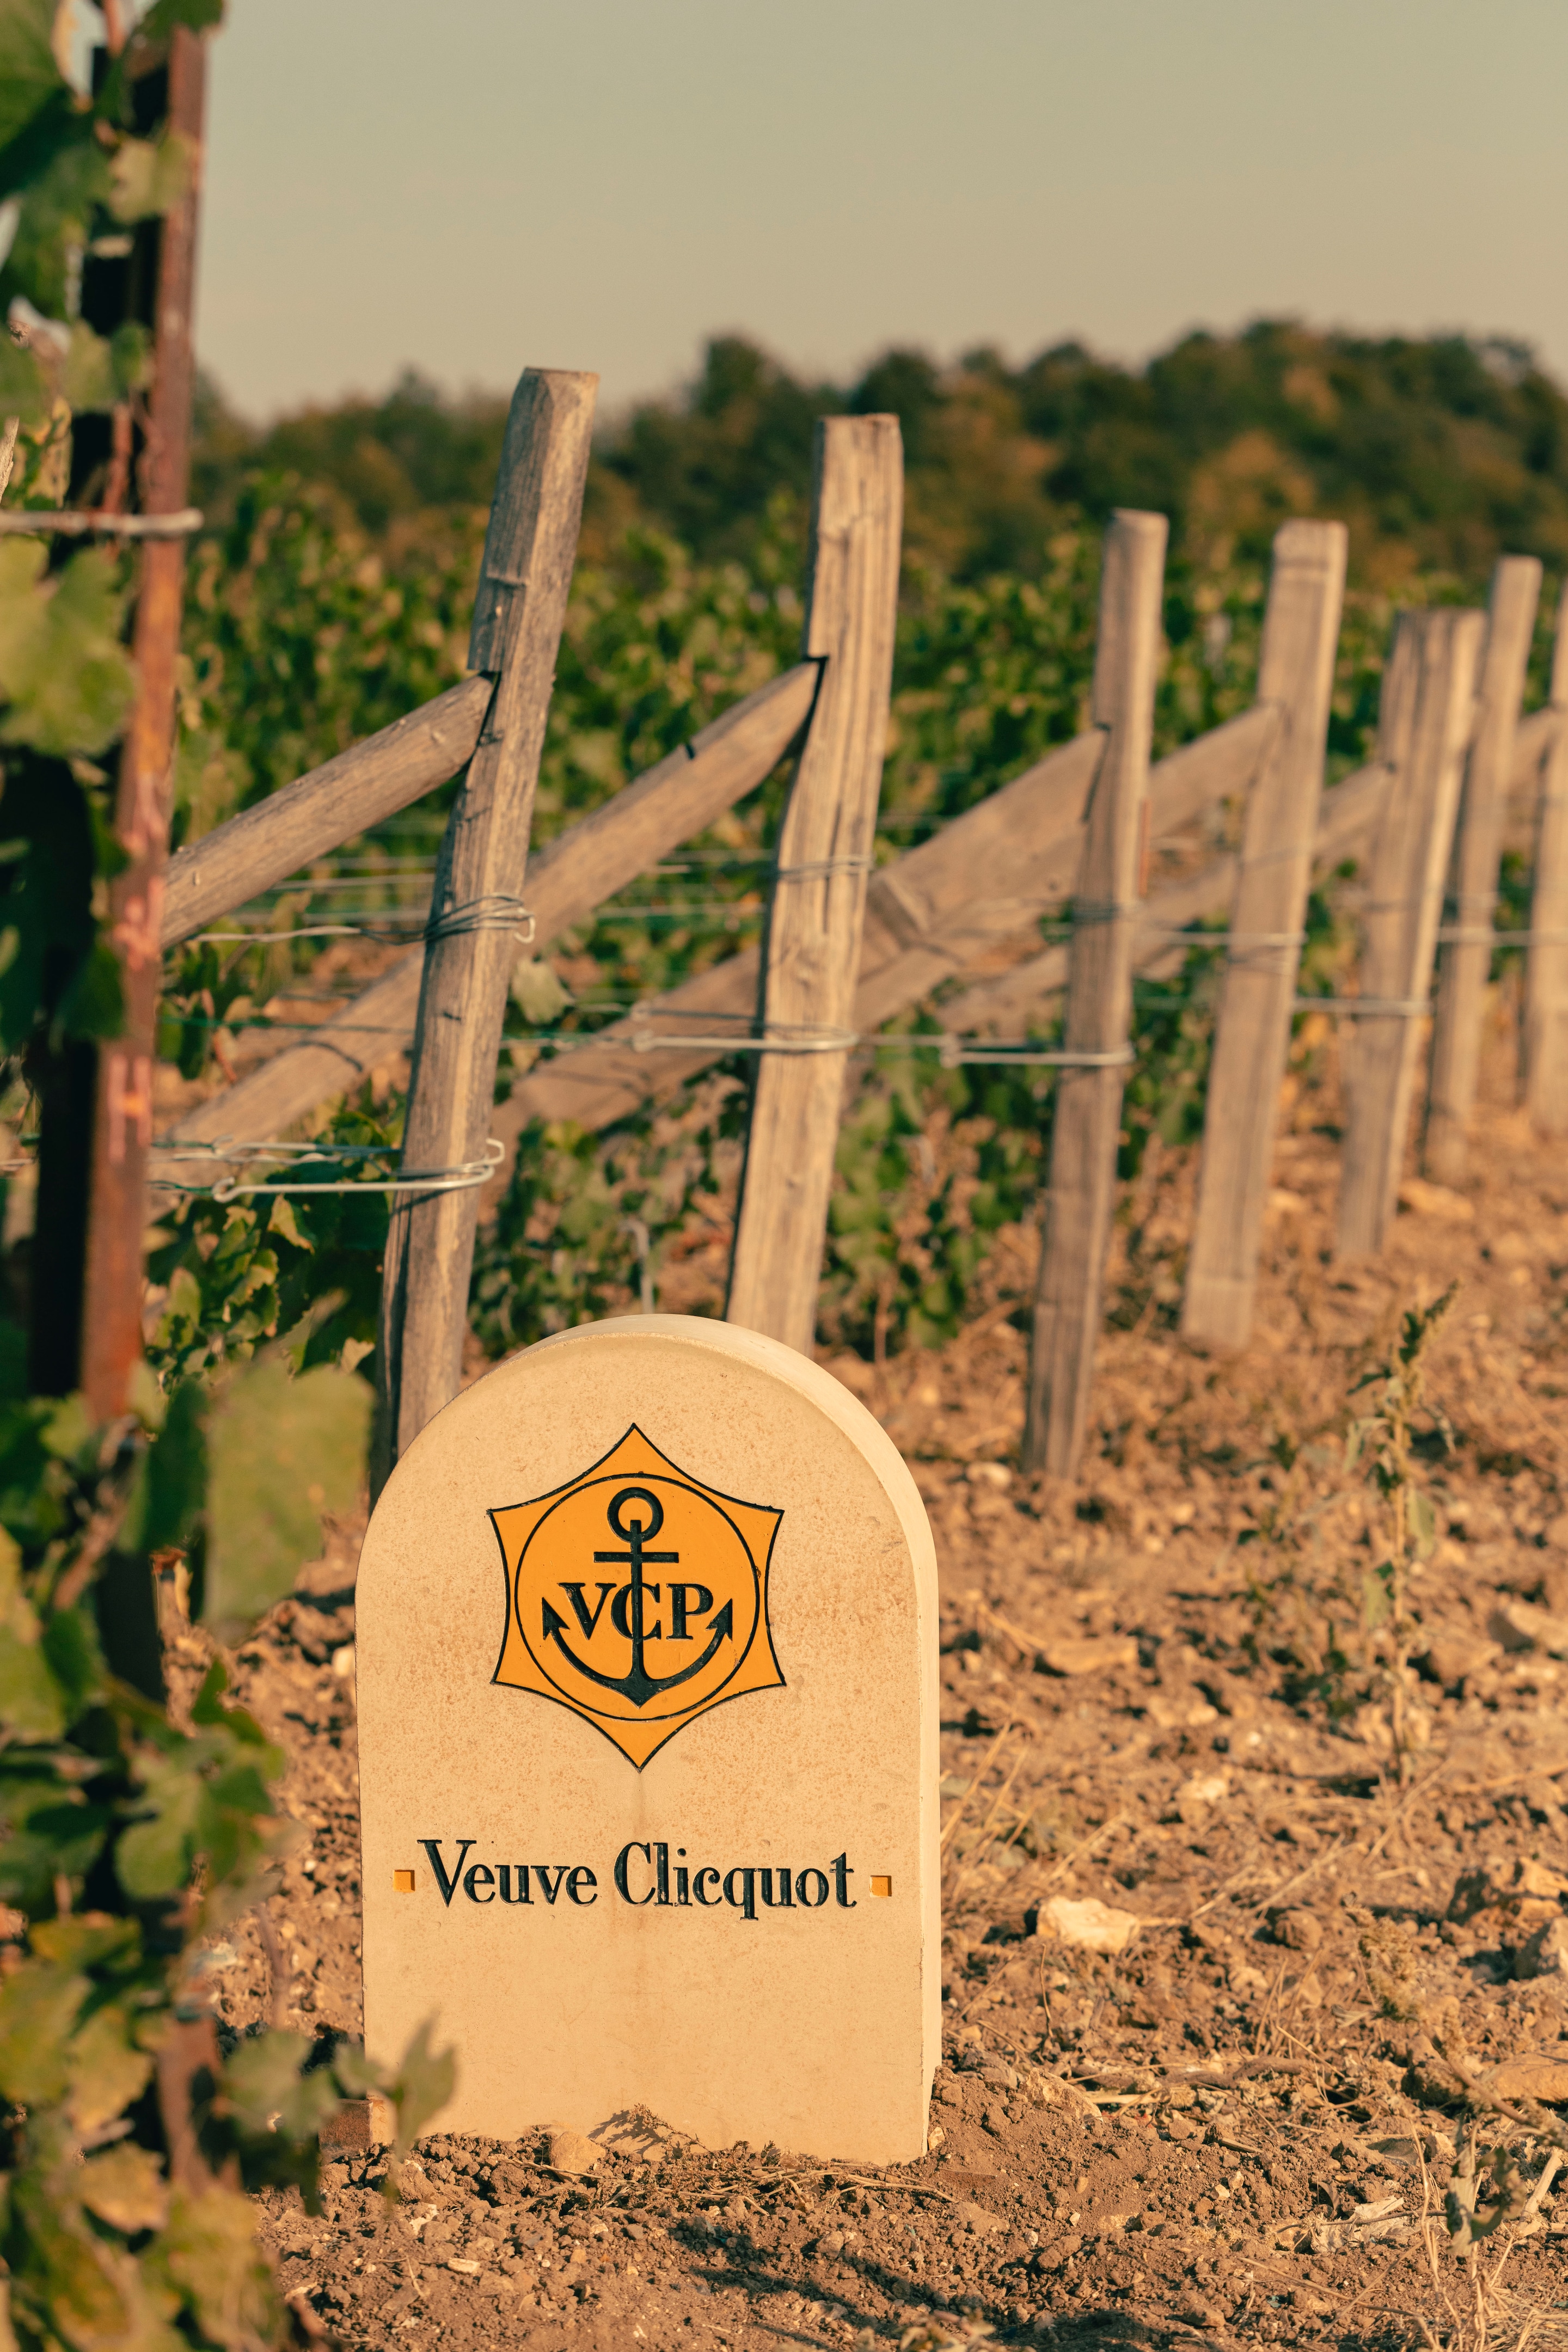 The Veuve Clicquot vineyards in Verzenay, Champagne